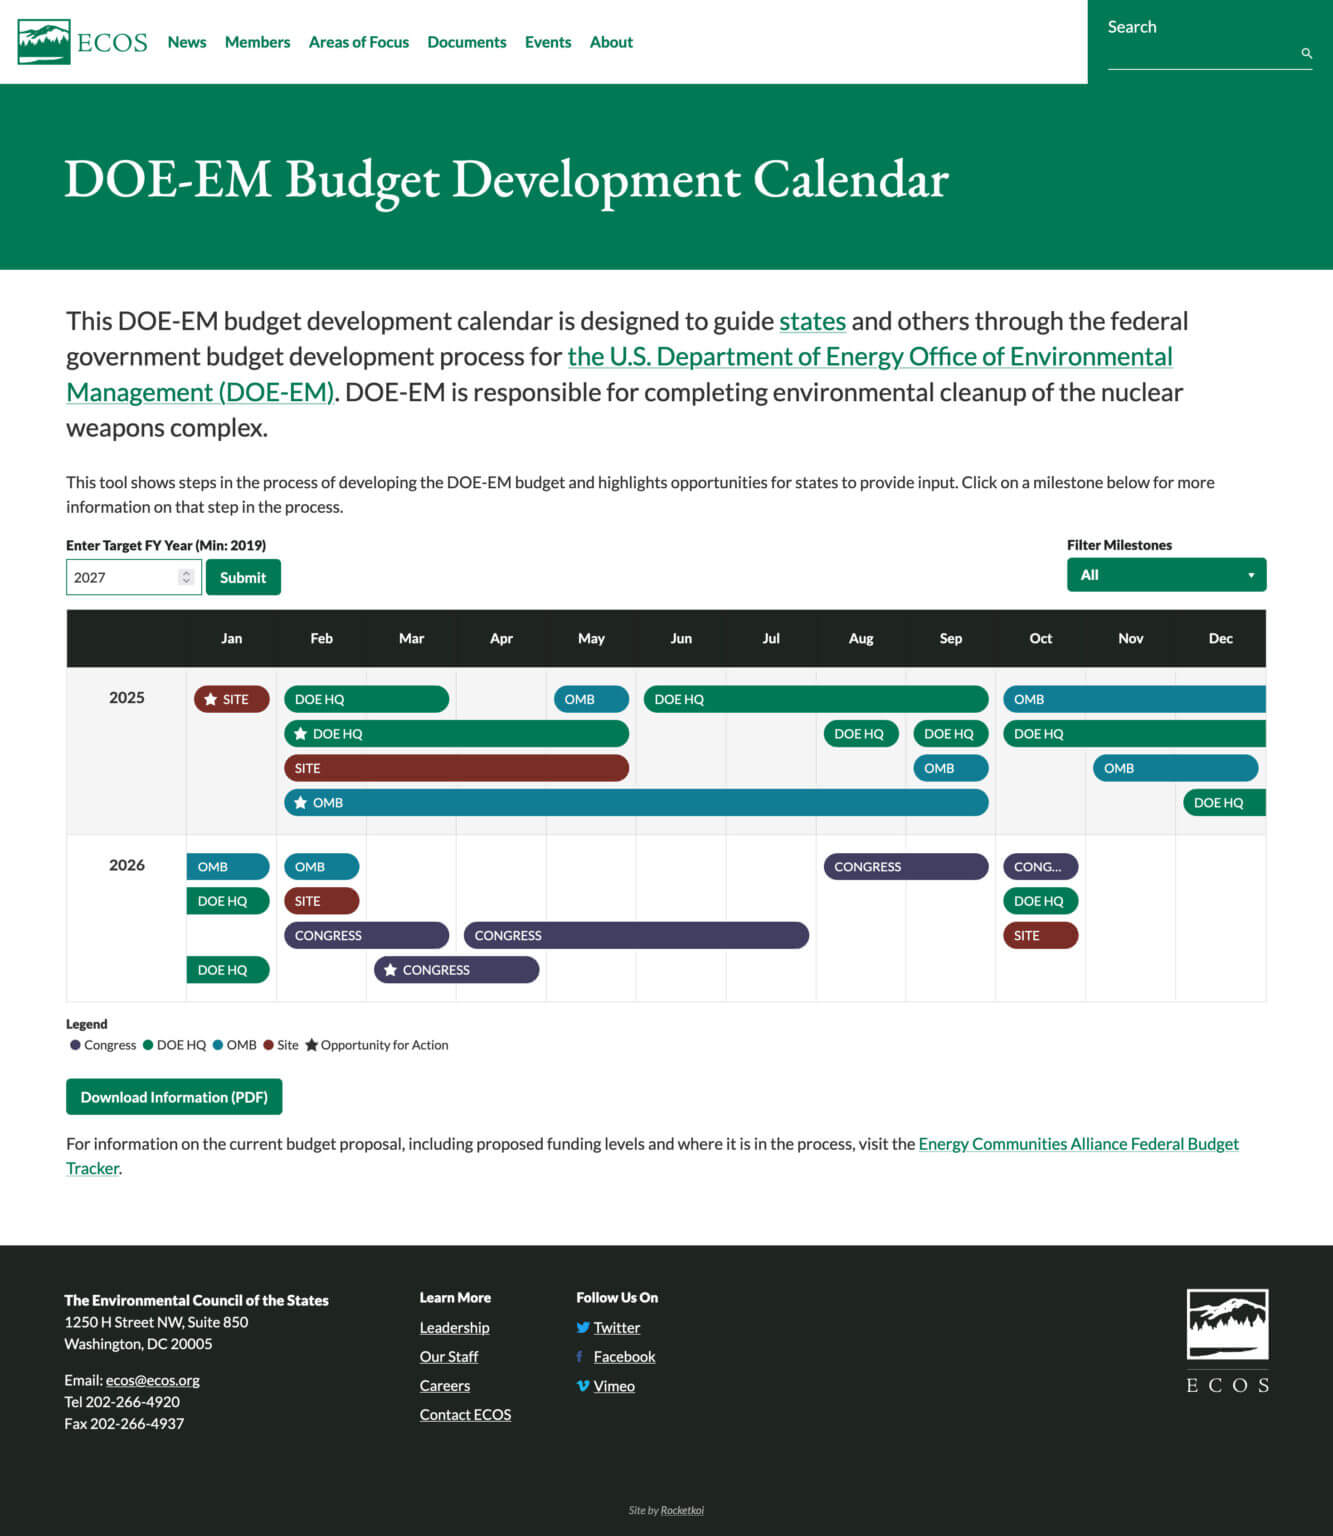 ECOS' DOE-EM budget development calendar